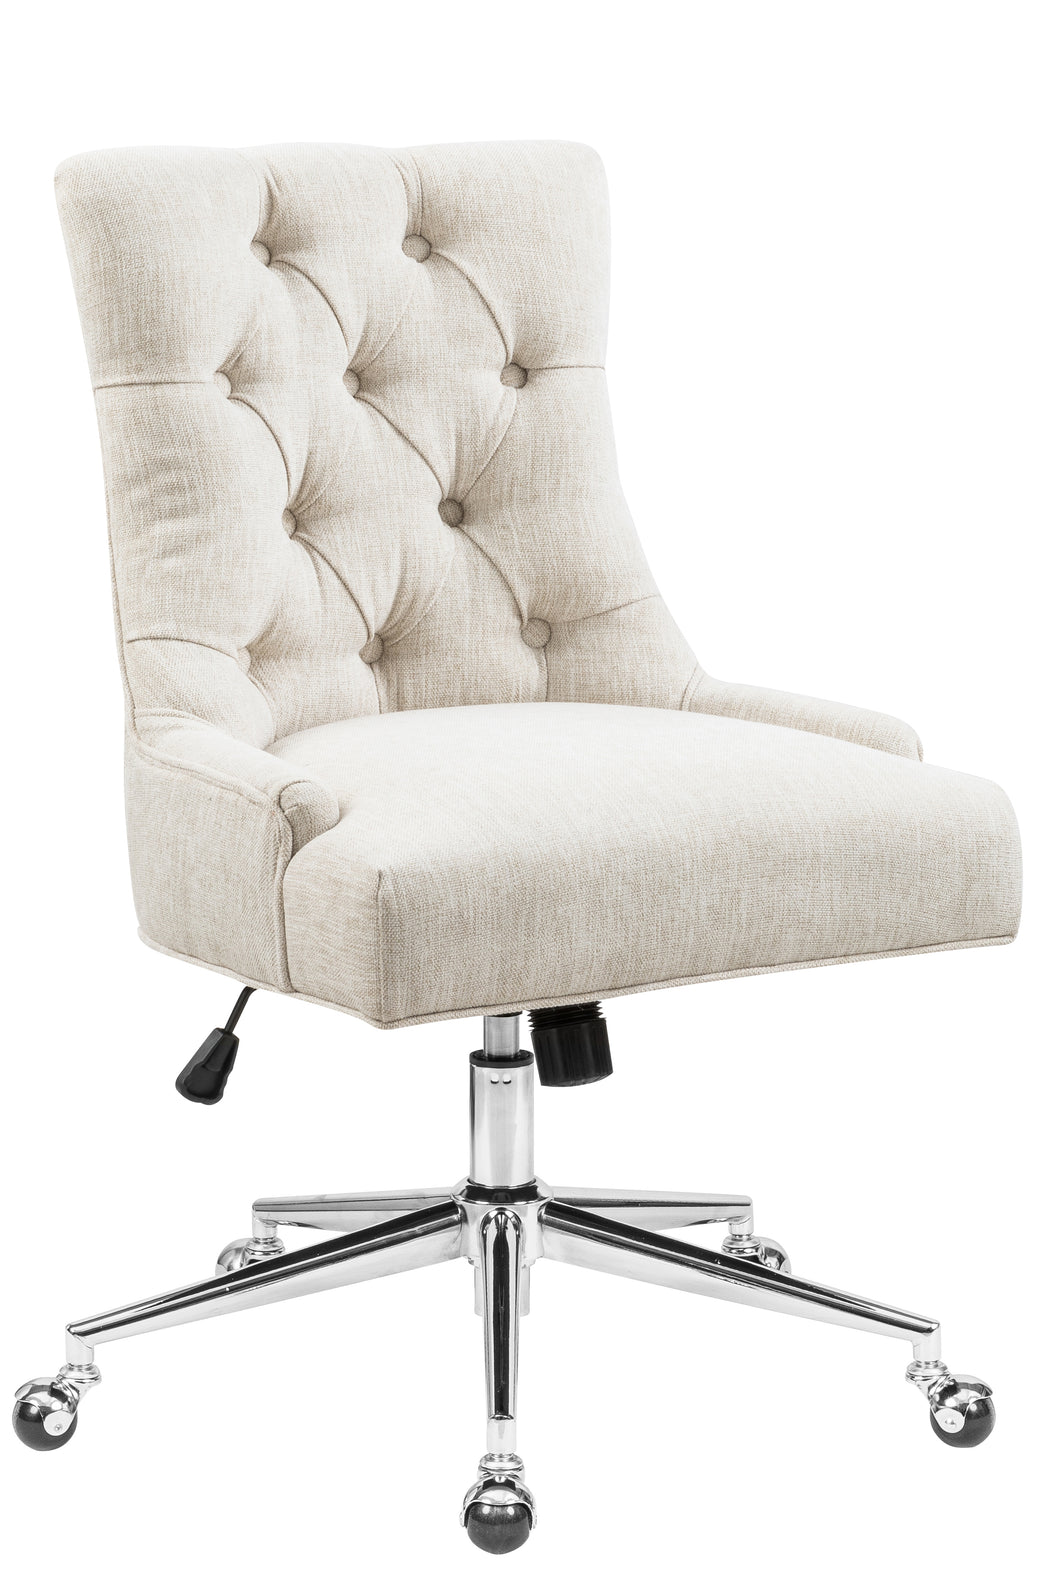 CHADEN Fully Upholstered Swivel Office Chair - HomyCasa